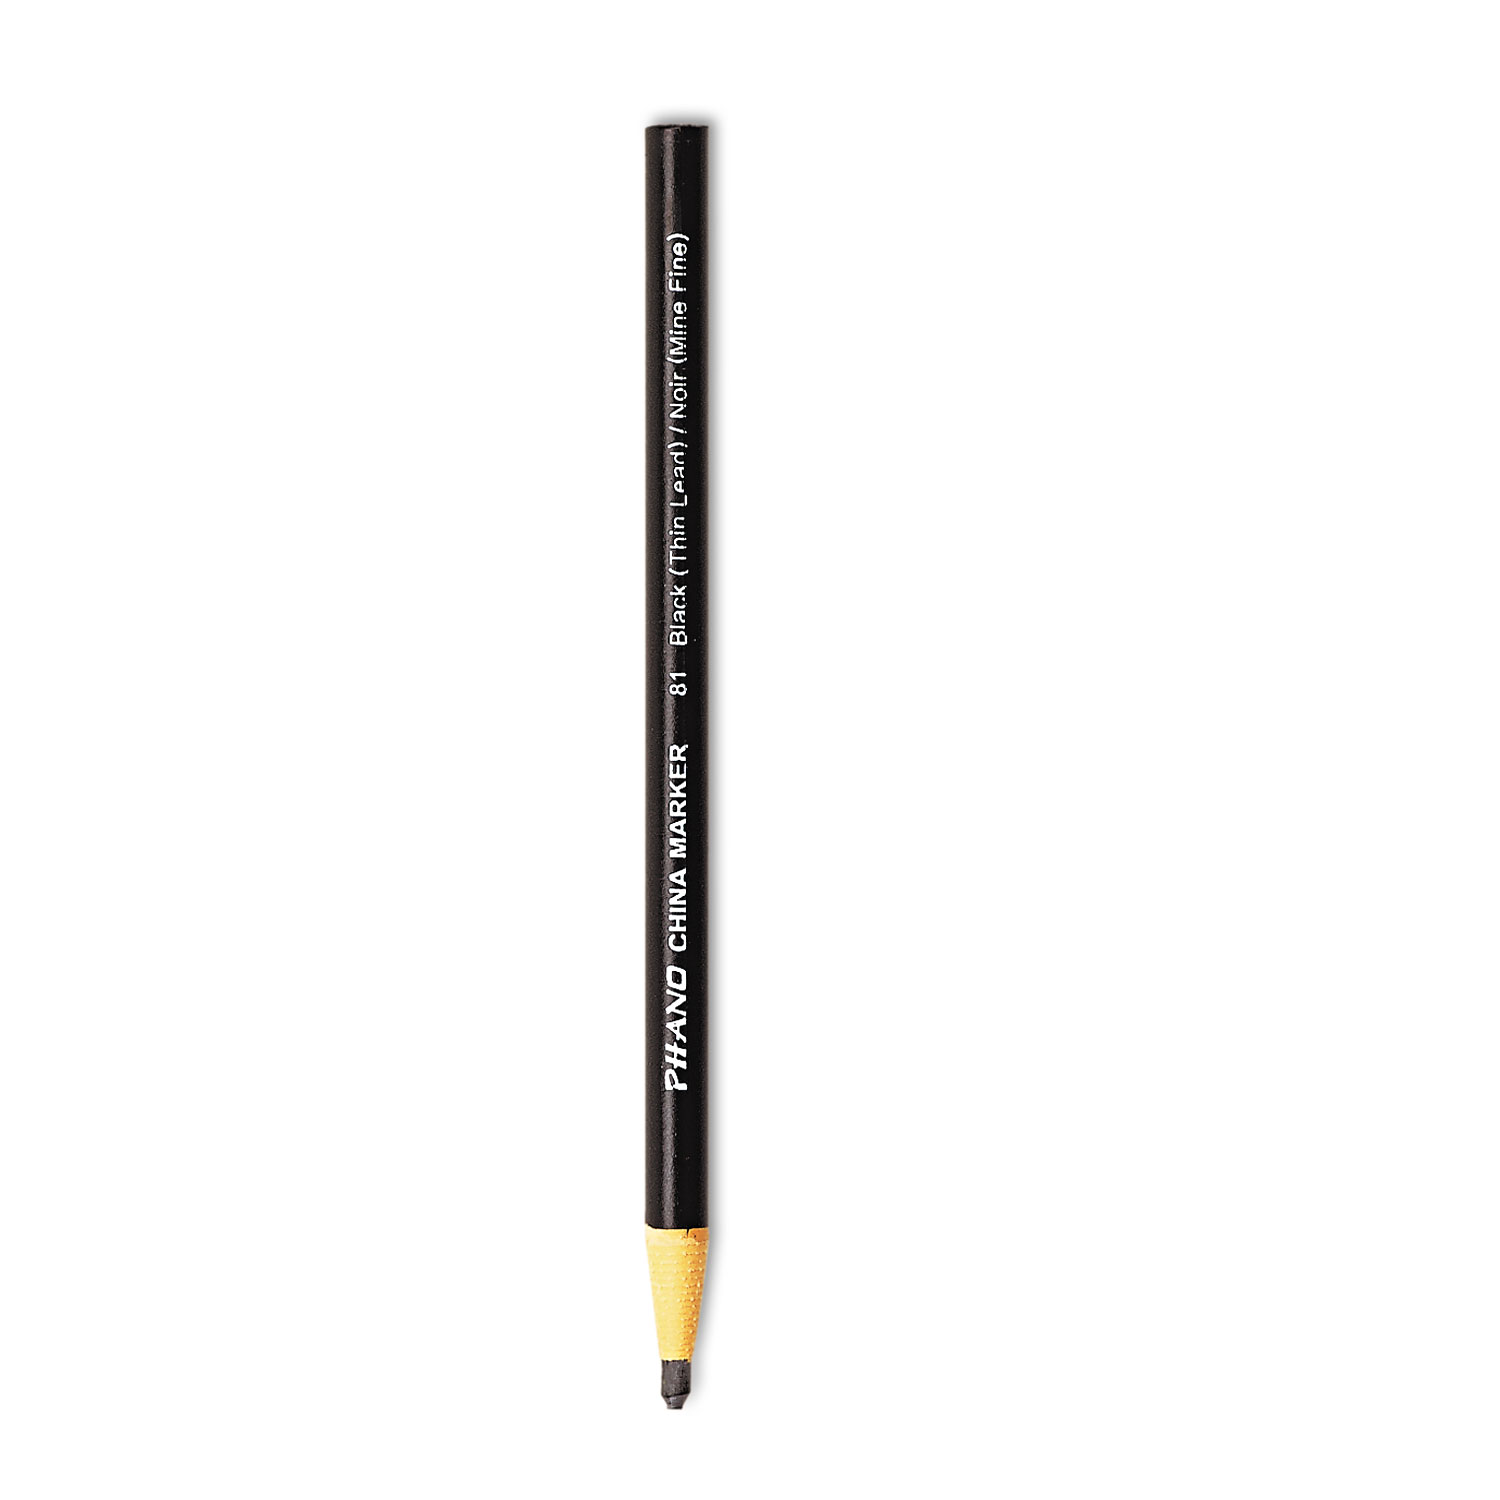 Prismacolor Premier Ebony Graphite Sketching Pencils, Jet Black, Extra Smooth, Dozen - 14420